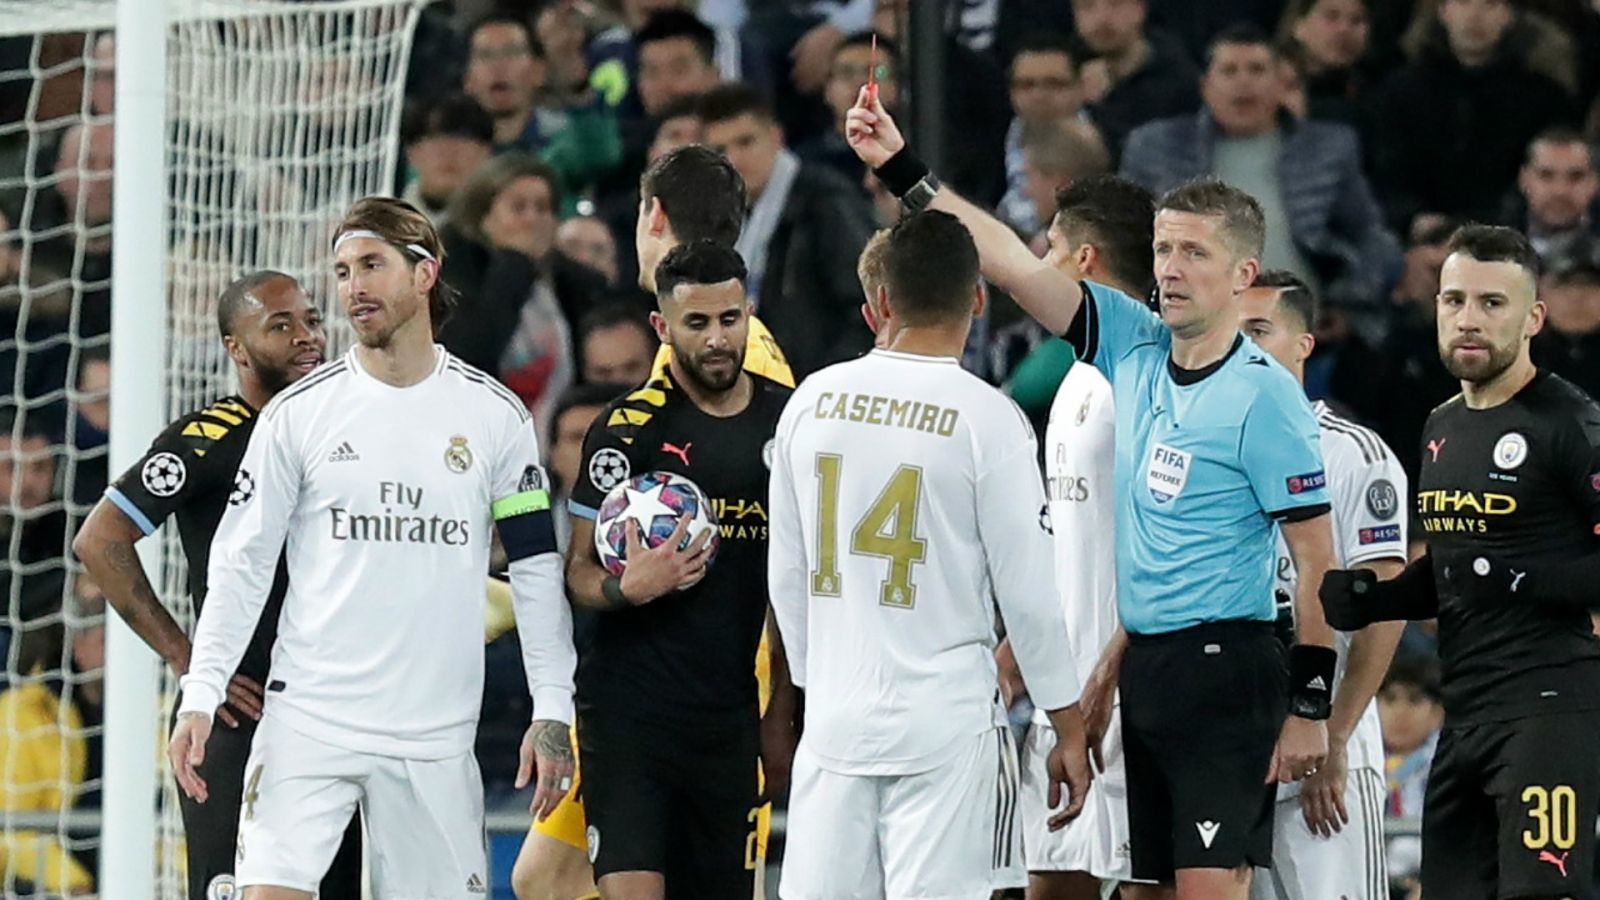 Ramos “bắt kịp” Edgar Davids và Ibrahimovic về khoản... thẻ đỏ